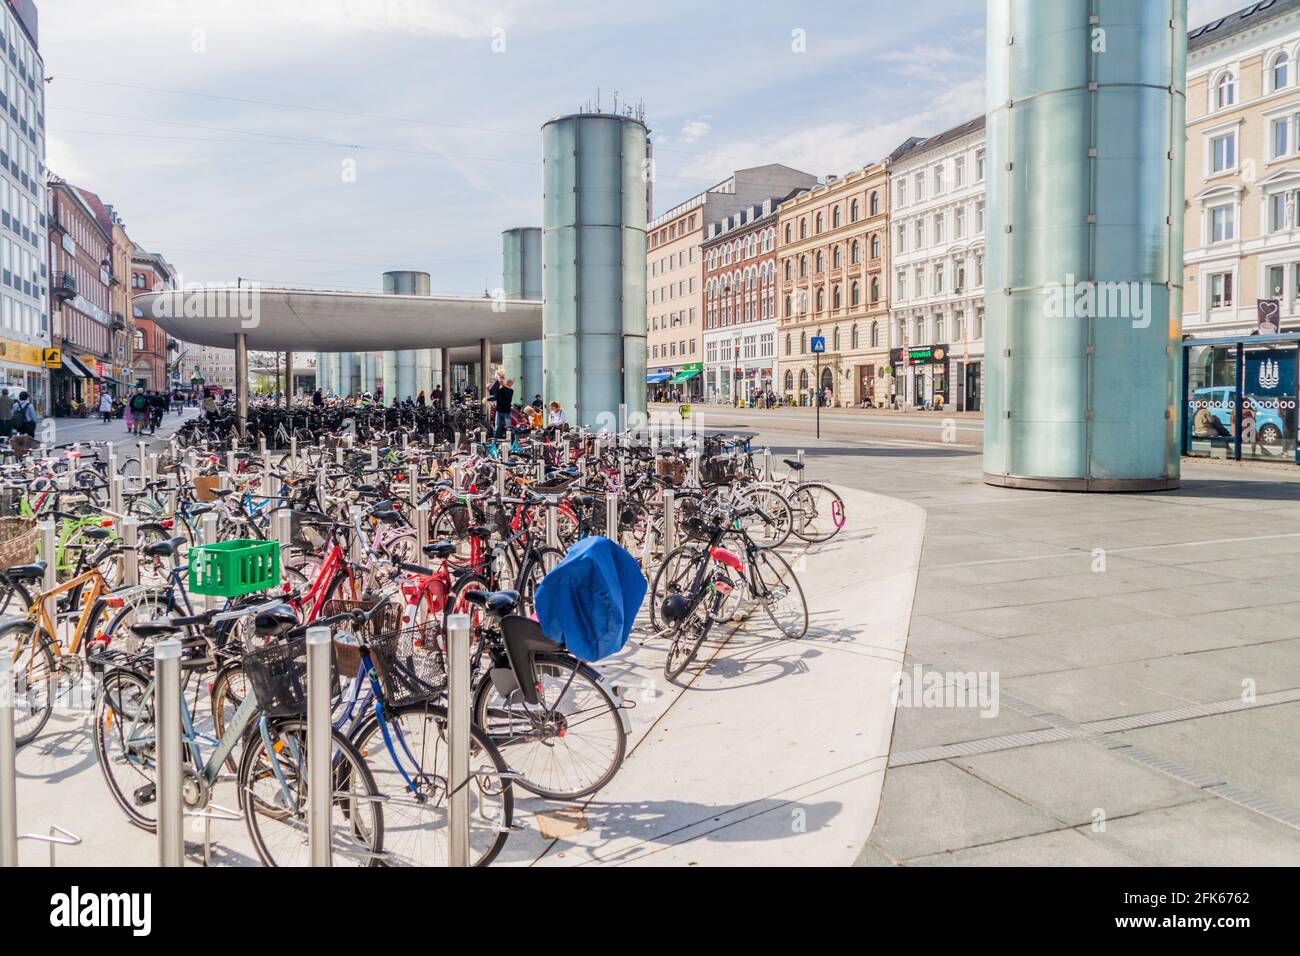 COPENHAGEN, DENMARK - AUGUST 28, 2016: Rows of bicycles at Norreport in Copenhagen Stock Photo